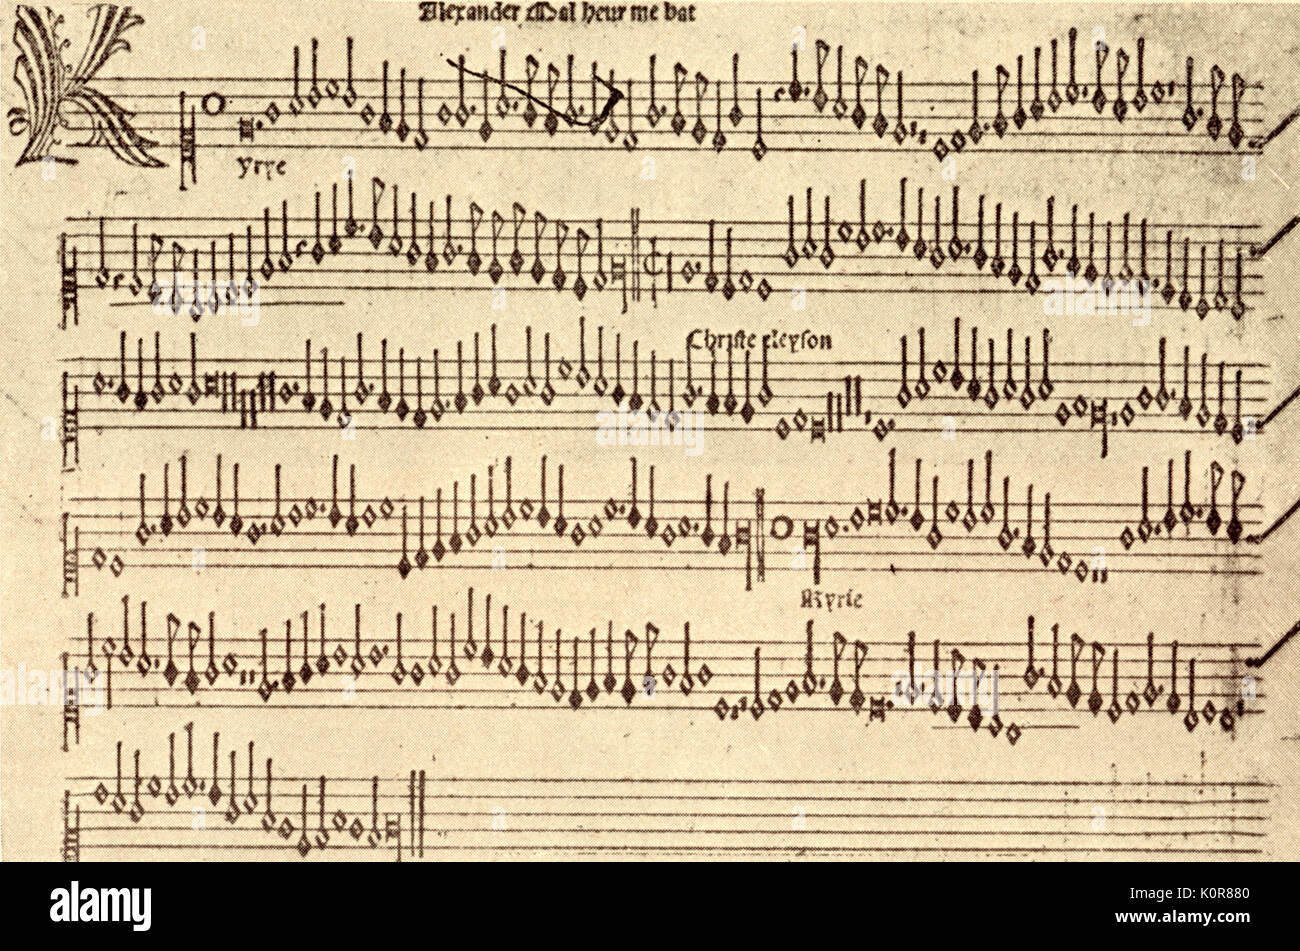 PETRUCCI, Ottaviano dei-Superius Teil - das Buch der Massen von Alexander Agricola (Malheur me bat, 1500). Italienische Musik Drucker (1466-1539); Er ist der Erfinder der Metal Typ für mensural Musik drucken. Stockfoto